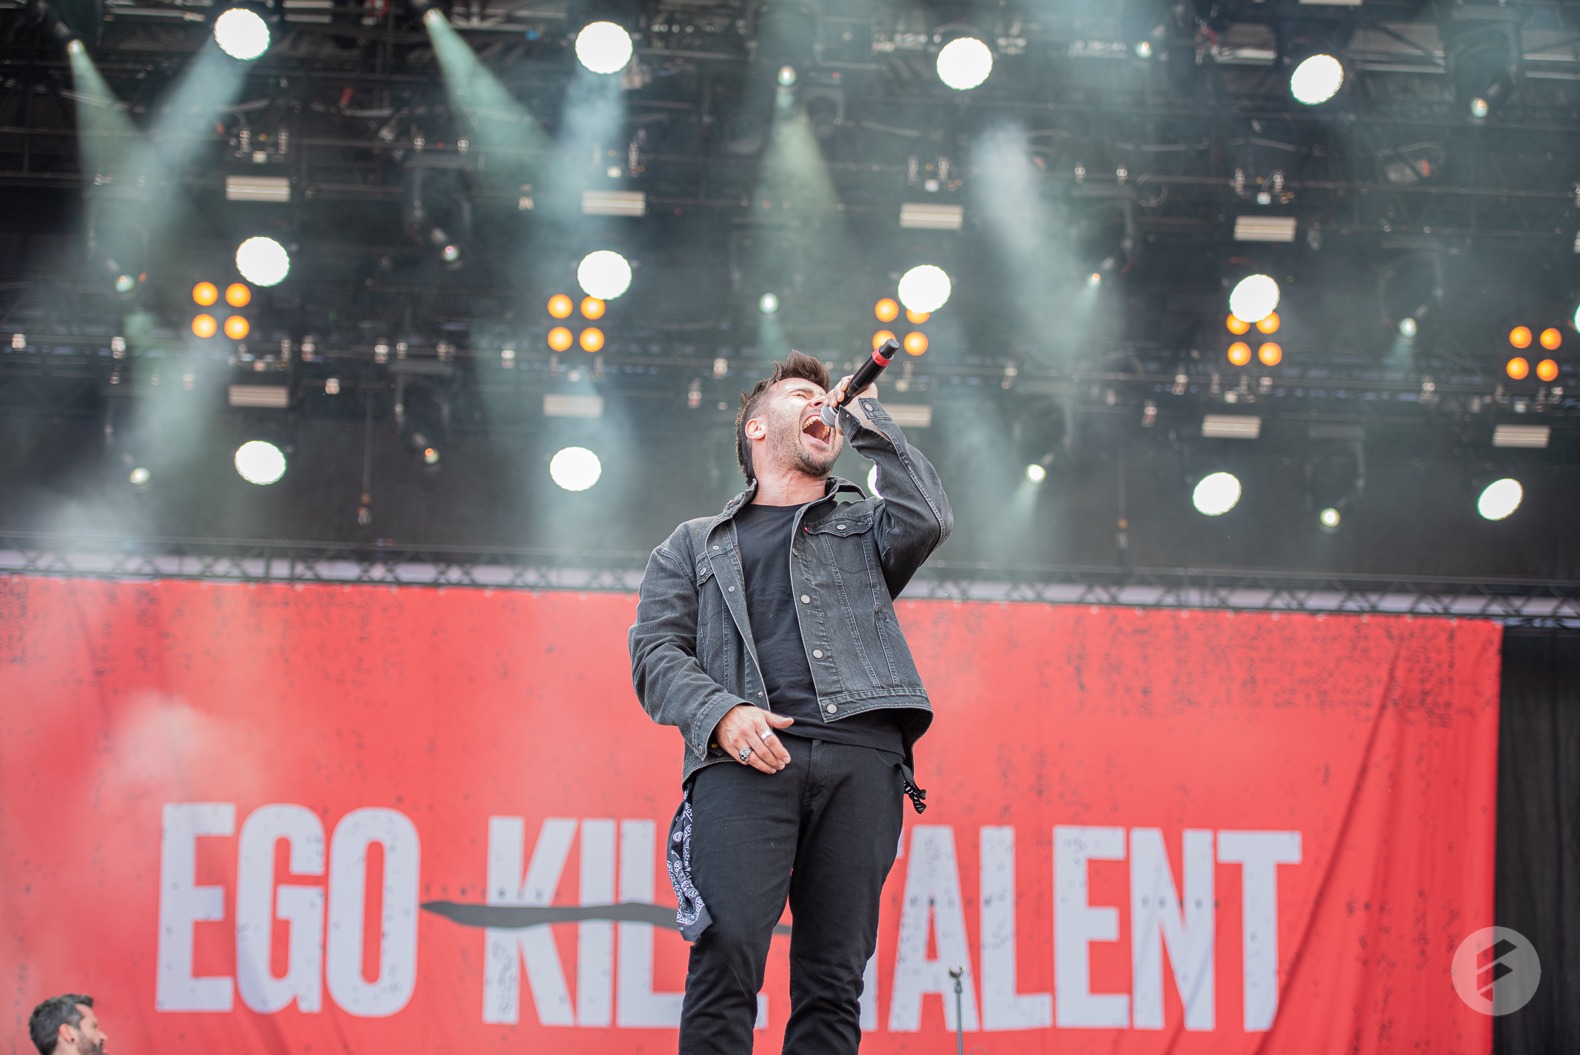 Ego Kill Talent | Rock am Ring 2022 